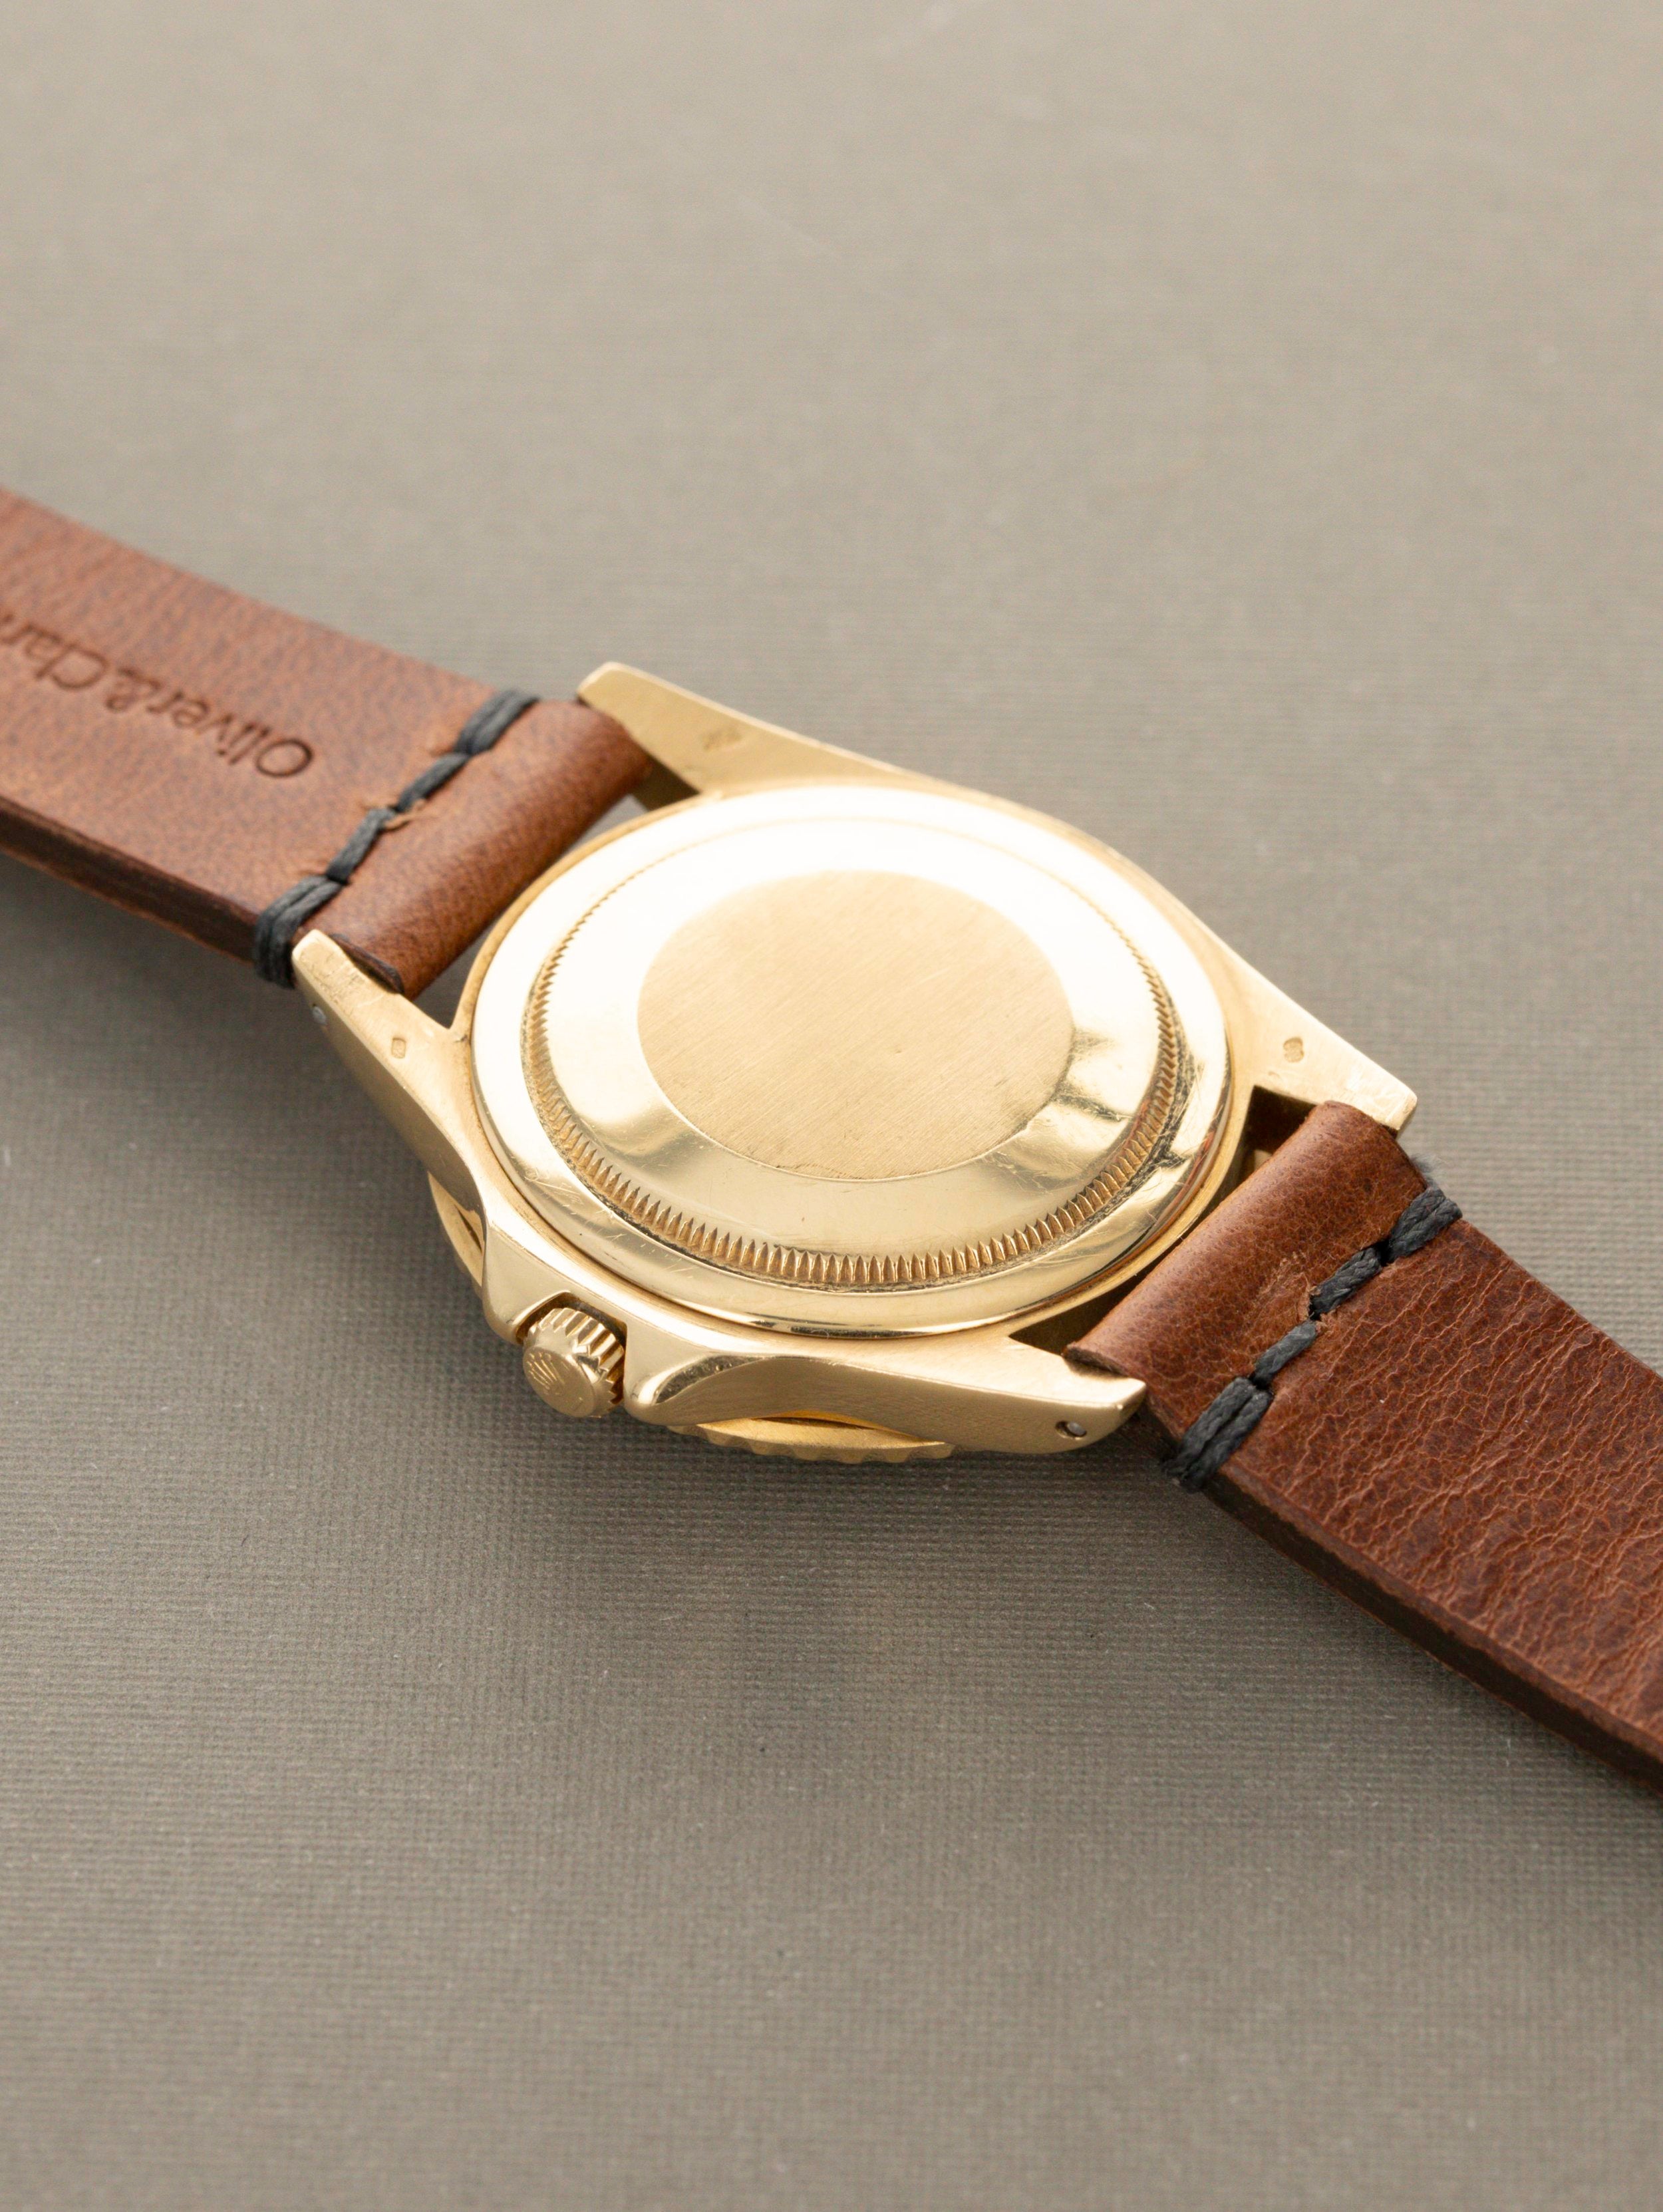 Rolex GMT-Master Ref. 1675 - Original Owner Watch